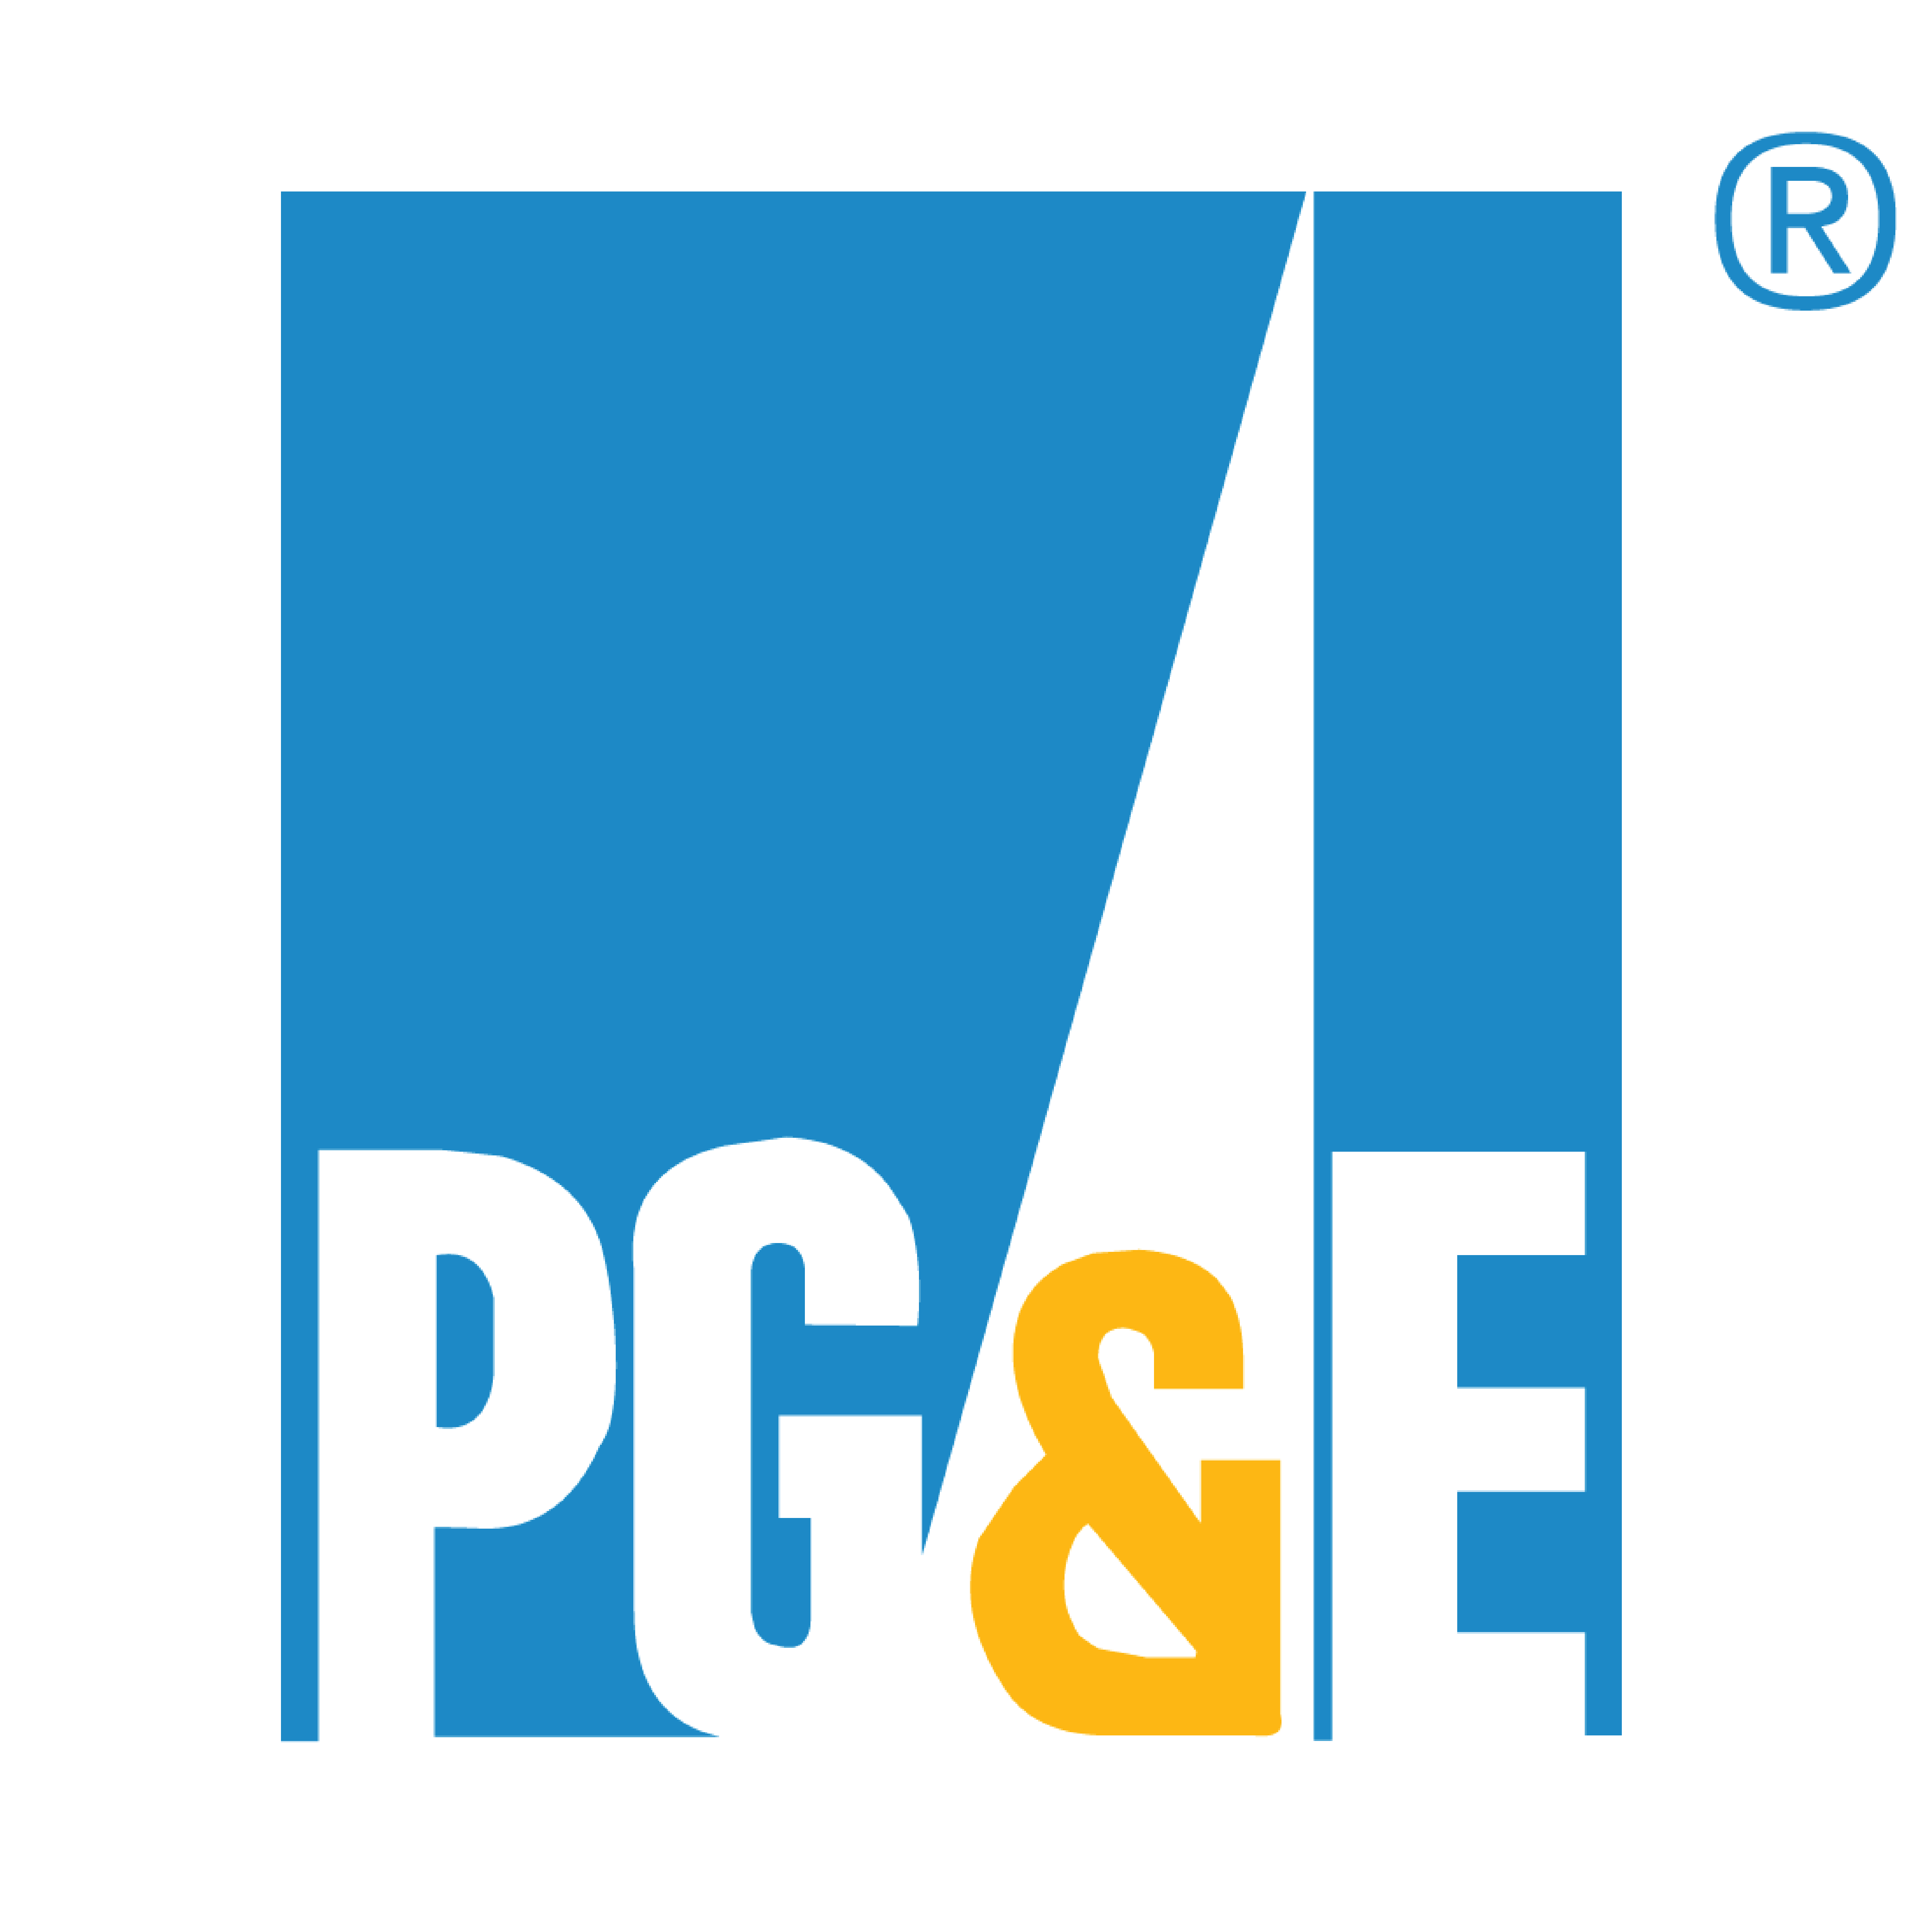 pg&e-logo